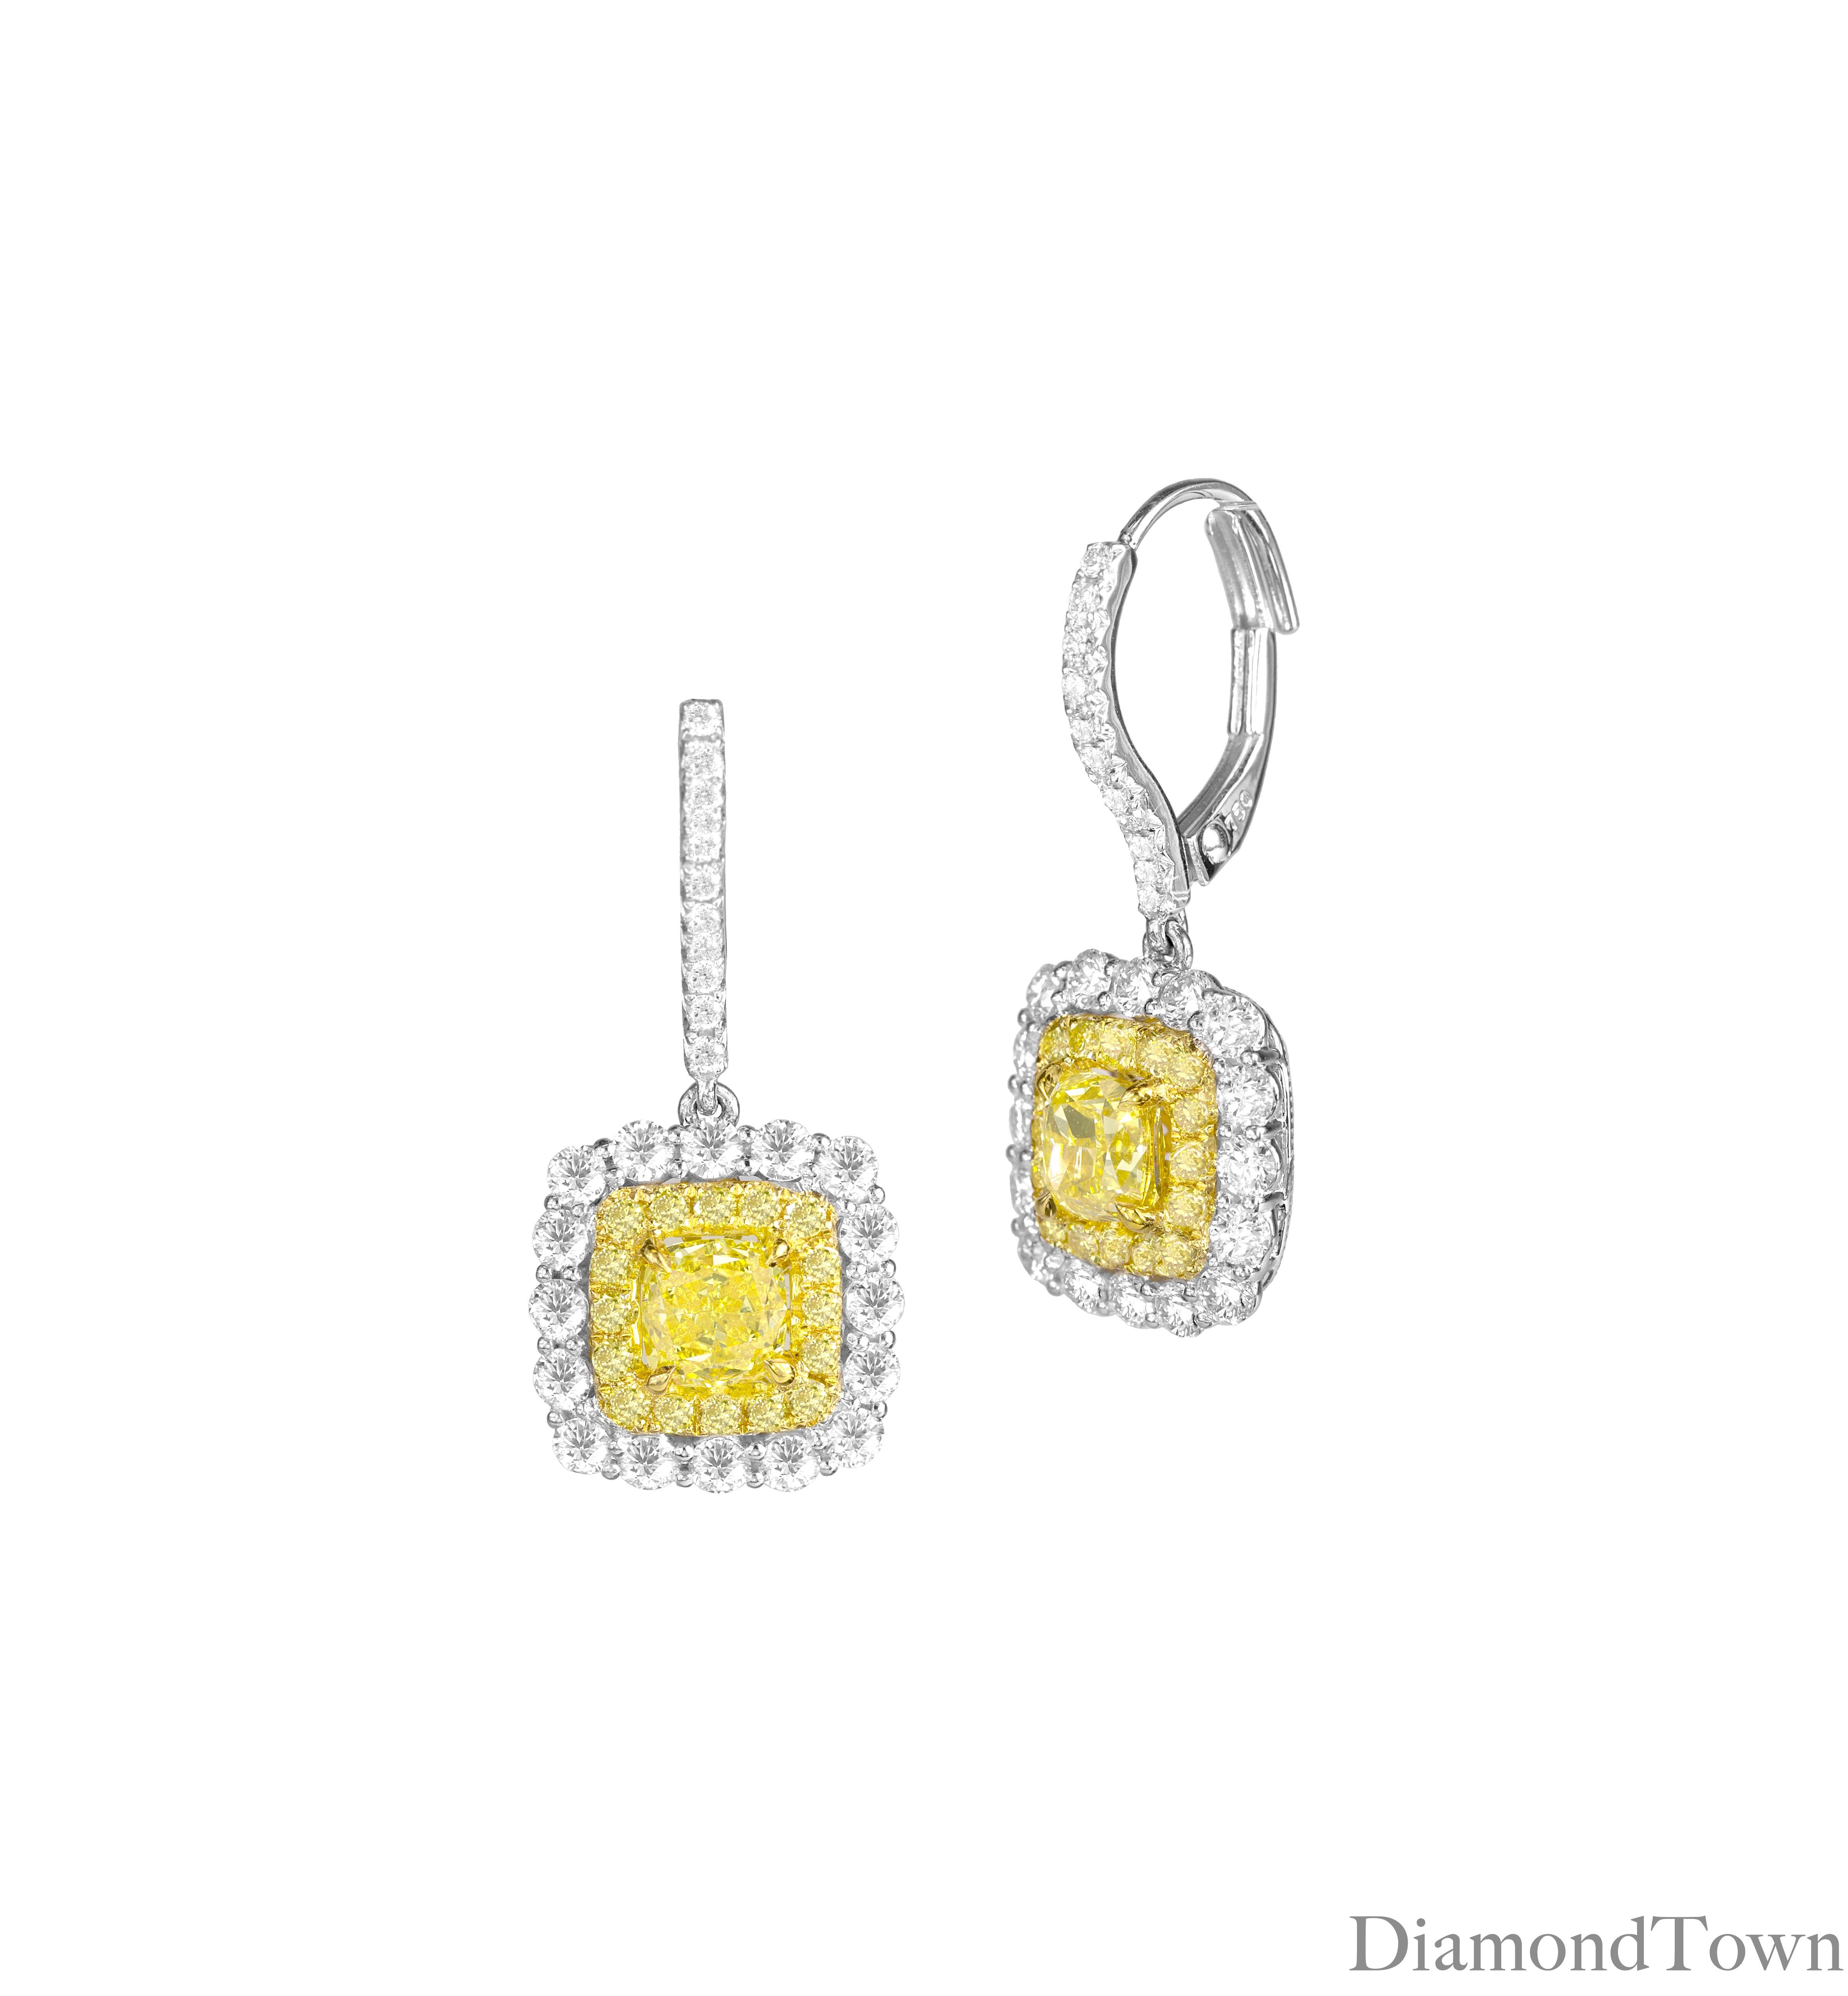 Diese exquisiten Ohrringe haben einen GIA-zertifizierten Ovalschliff mit natürlichen, intensiv gelben Diamanten von 0,86 und 0,79 Karat, die von einem doppelten Halo aus runden gelben und runden weißen Diamanten umgeben sind. Sie sind sicher auf